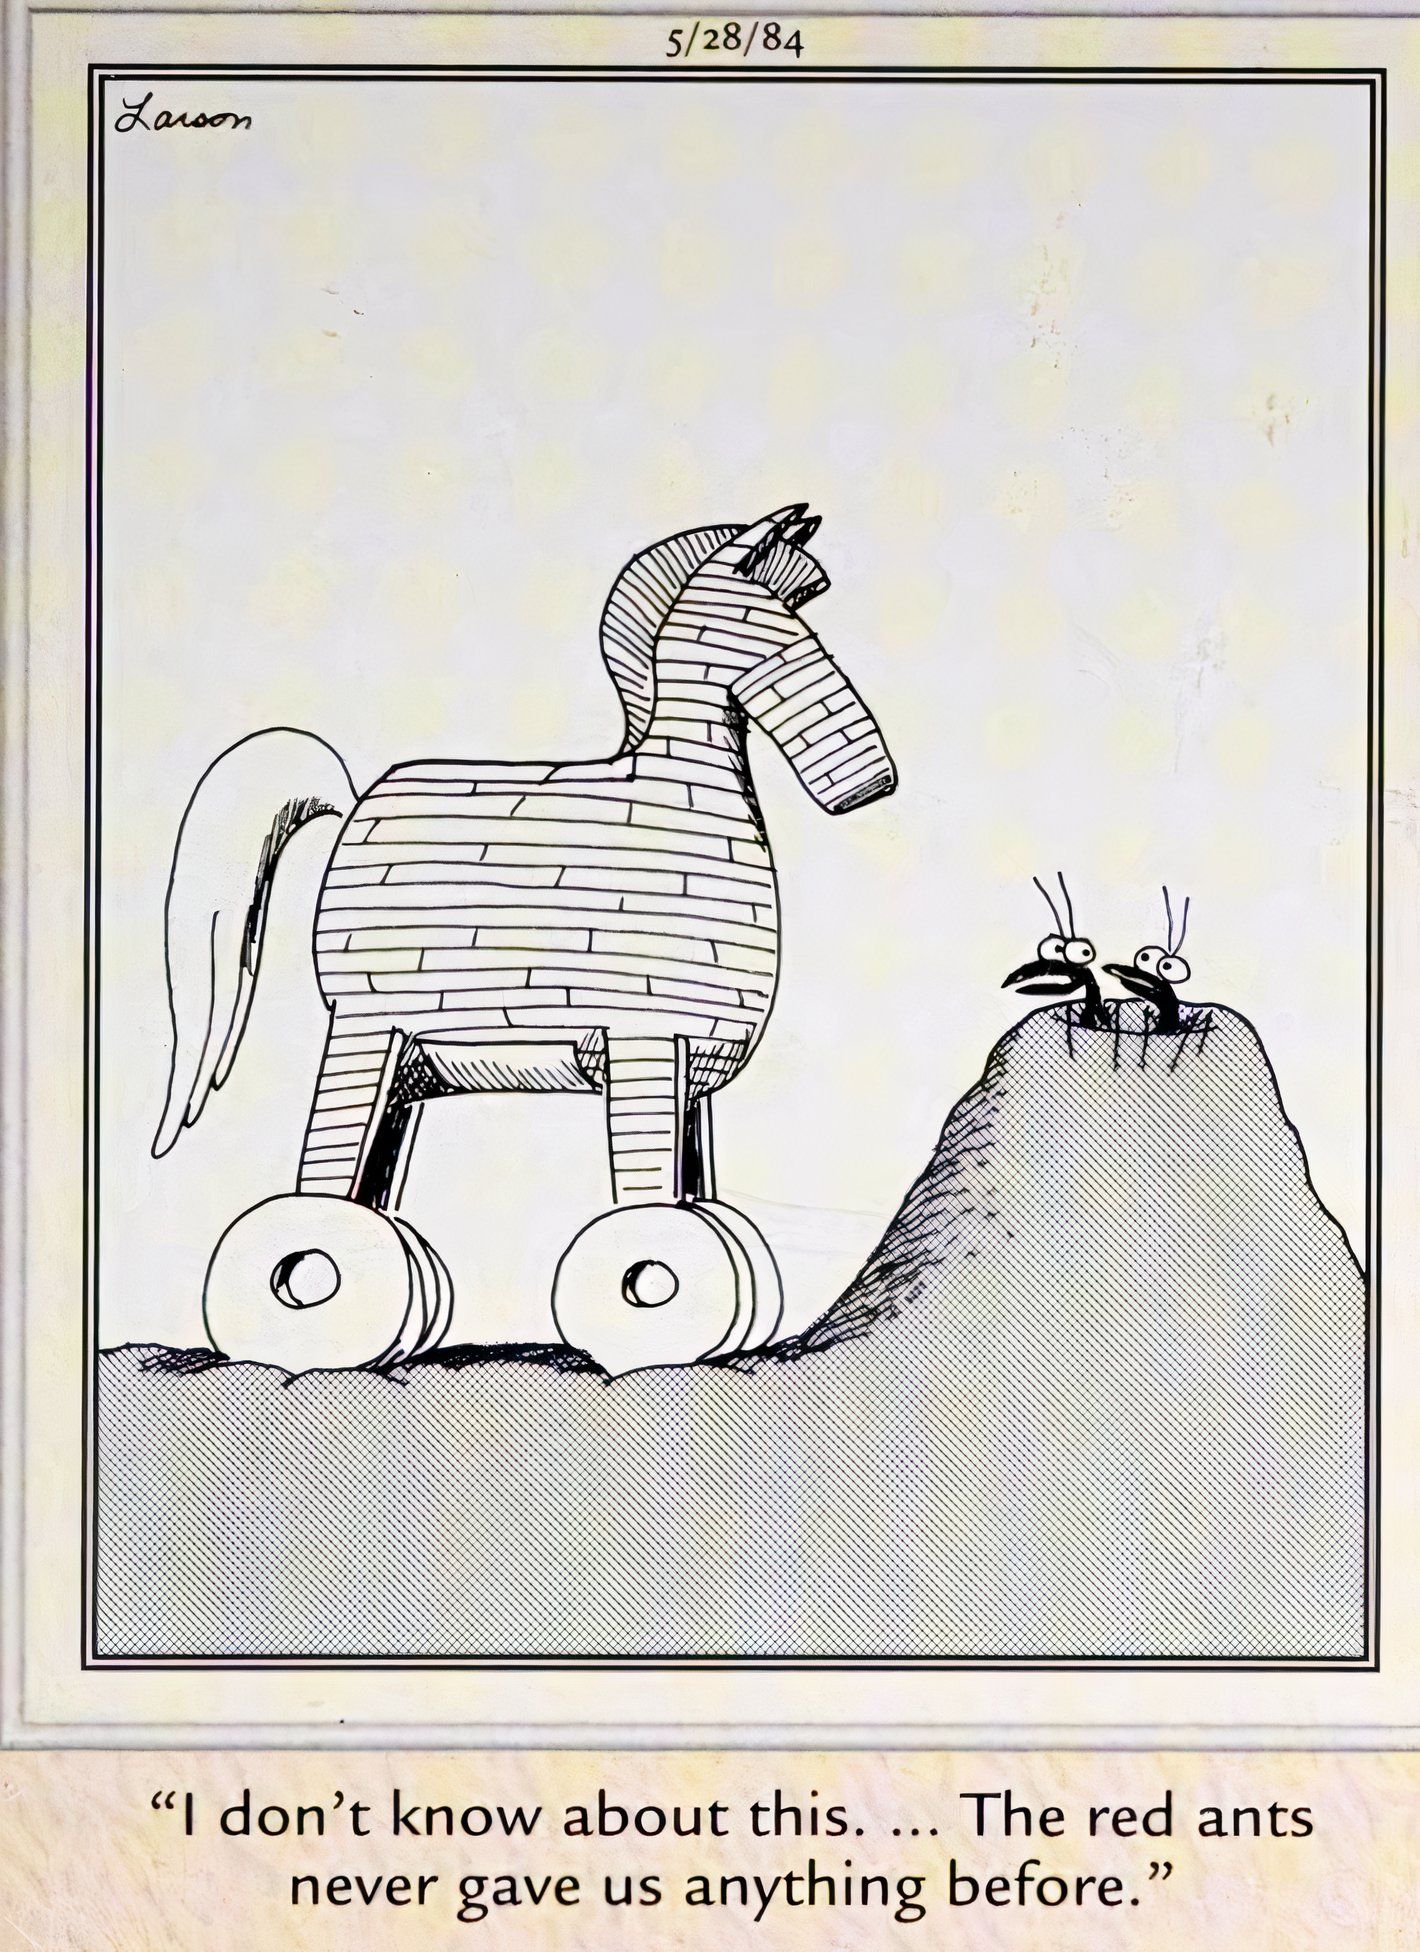 Far Side, formigas pretas expressam ceticismo por terem recebido um grande cavalo de madeira das formigas vermelhas